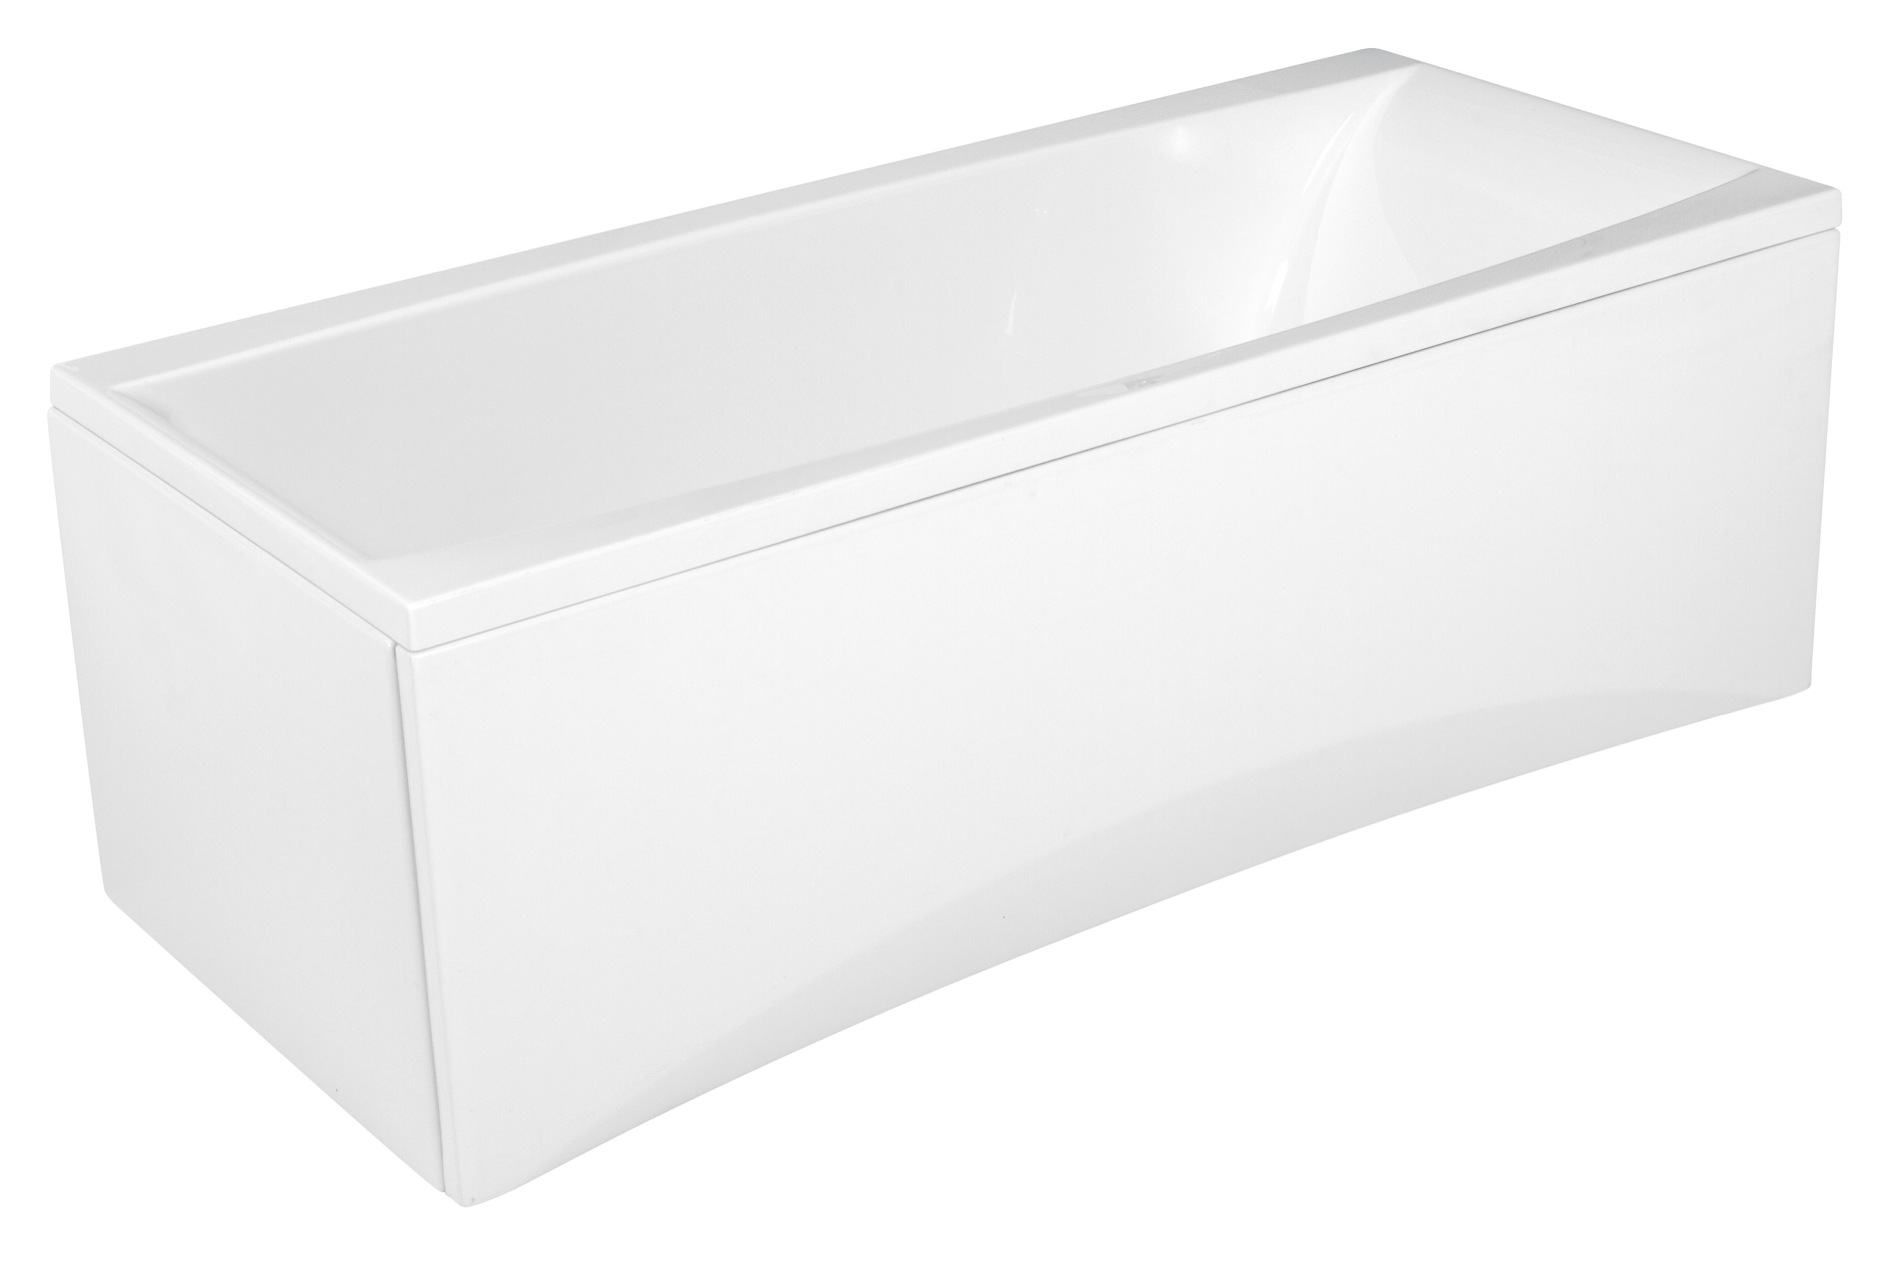 Акриловая ванна Cersanit Virgo 170x75, размер 170x75, цвет белый 63353 - фото 2